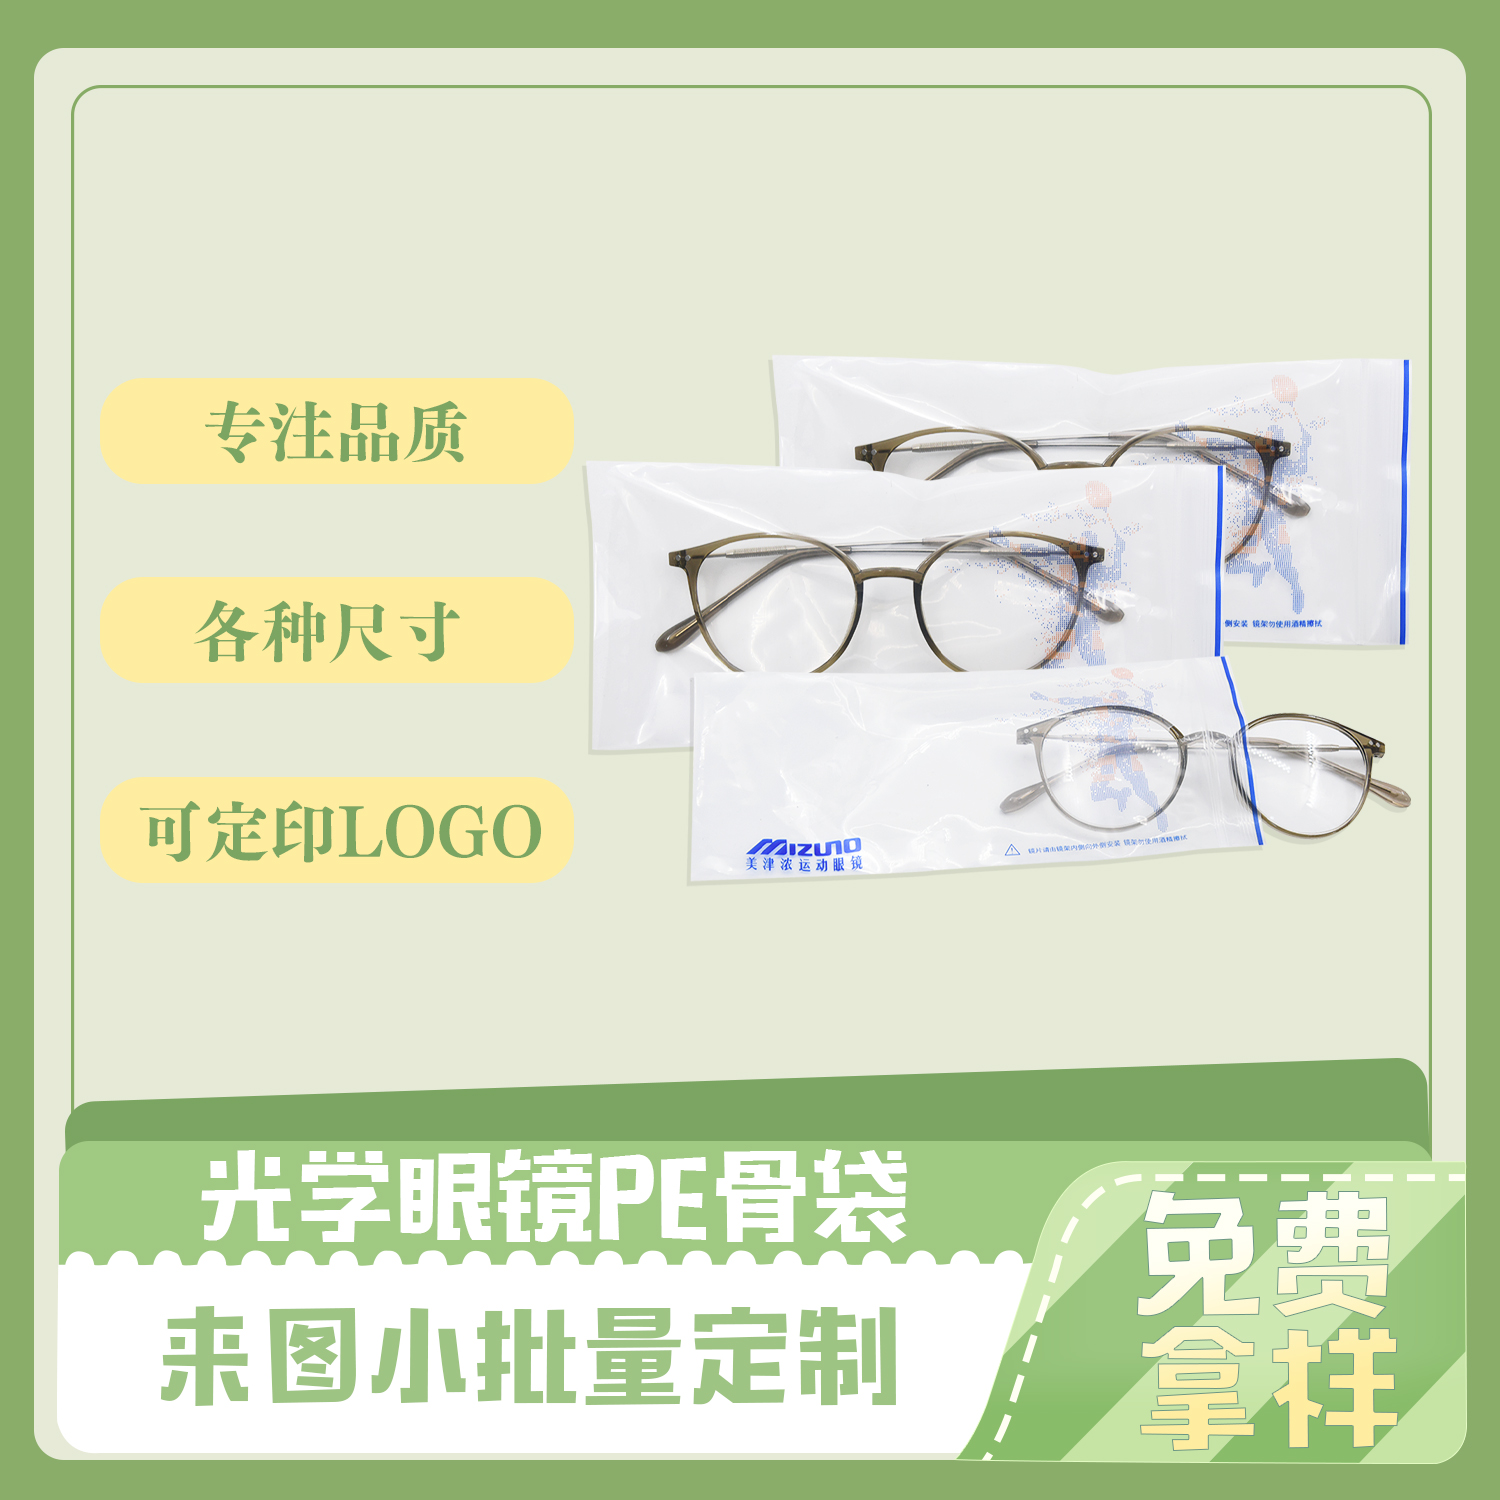 PCR再生胶袋|PE贴骨眼镜包装袋定制(图5)